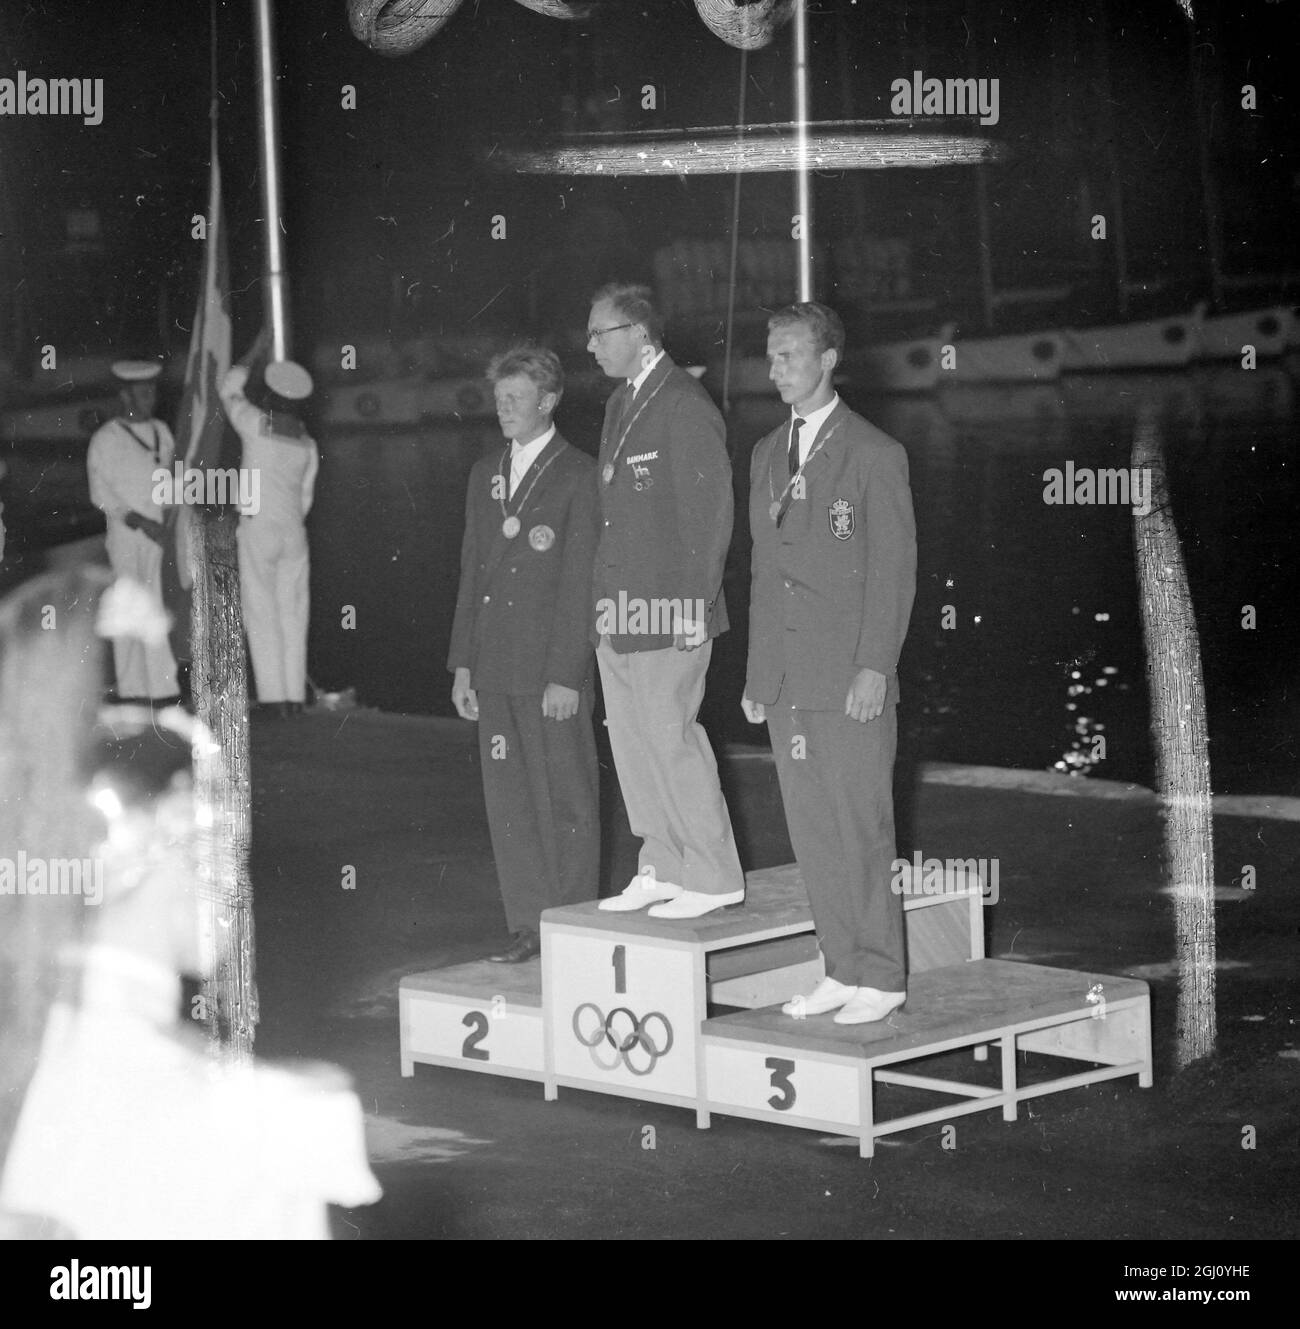 La foto mostra i vincitori della Olympic Yachting, classe Finn, sul podio durante la presentazione della medaglia la scorsa notte. Al centro si trova il Medalista d'oro Danimarca Paul Bert Elvstrom. A sinistra il medaglia d'argento Alexandr Chuchelov (URSS), e a destra il medaglia di bronzo del Belgio Andre Nelis. Le medaglie sono state presentate da Iva Vind, membro danese del Comitato Olimpico Internazionale. 8 SETTEMBRE 1960 Foto Stock